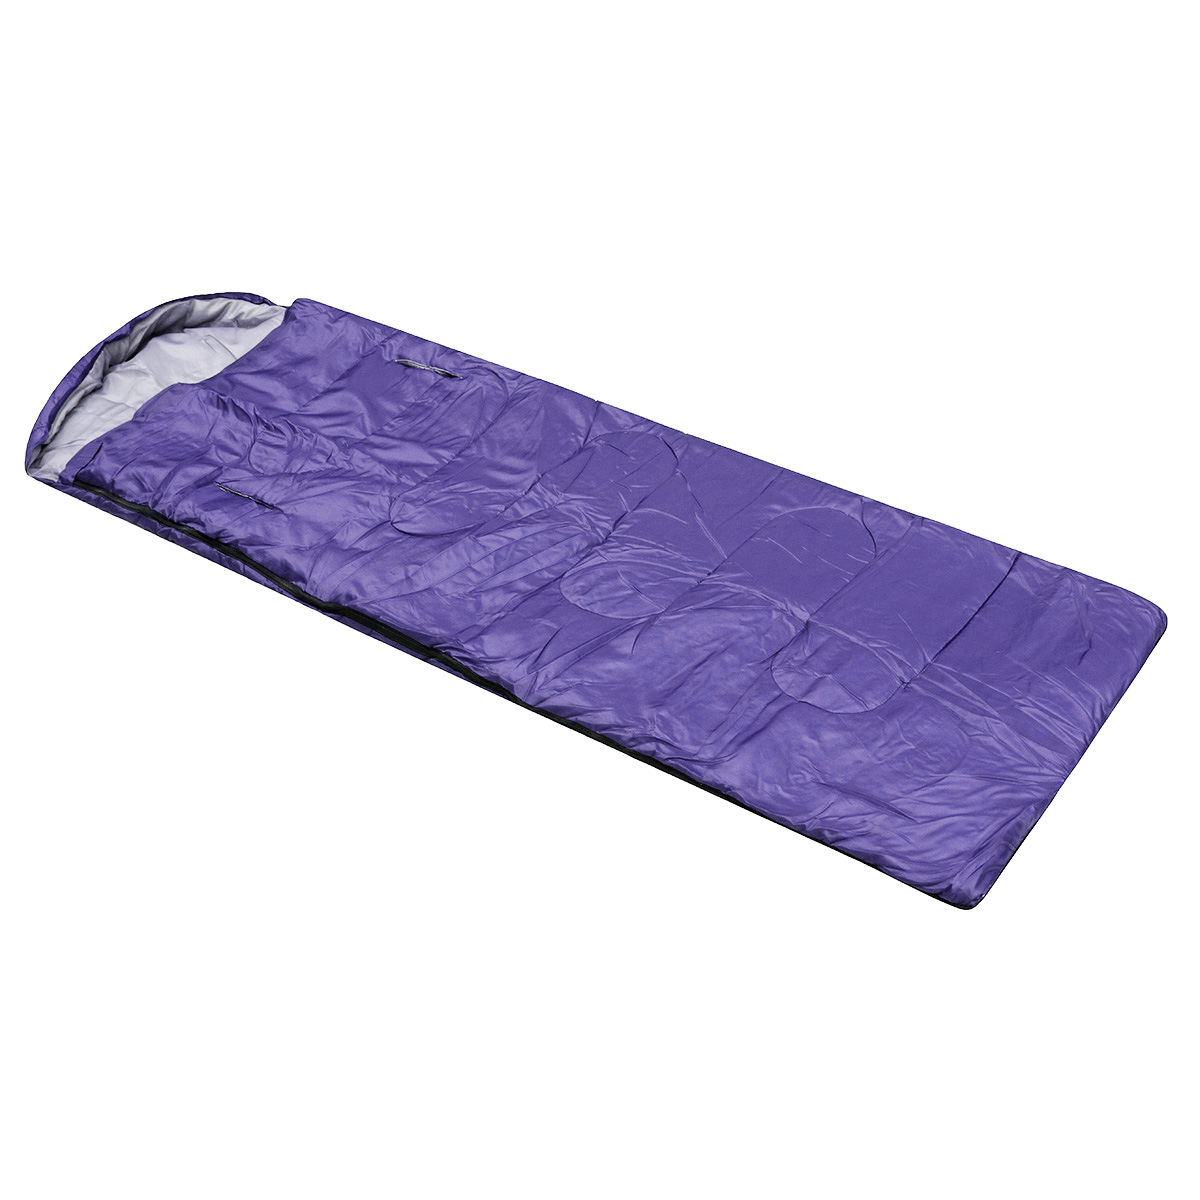 10x75CM-Waterproof-Camping-Envelope-Sleeping-Bag-Outdoor-Hiking-Backpacking-Sleeping-Bag-with-Compre-1647670-9